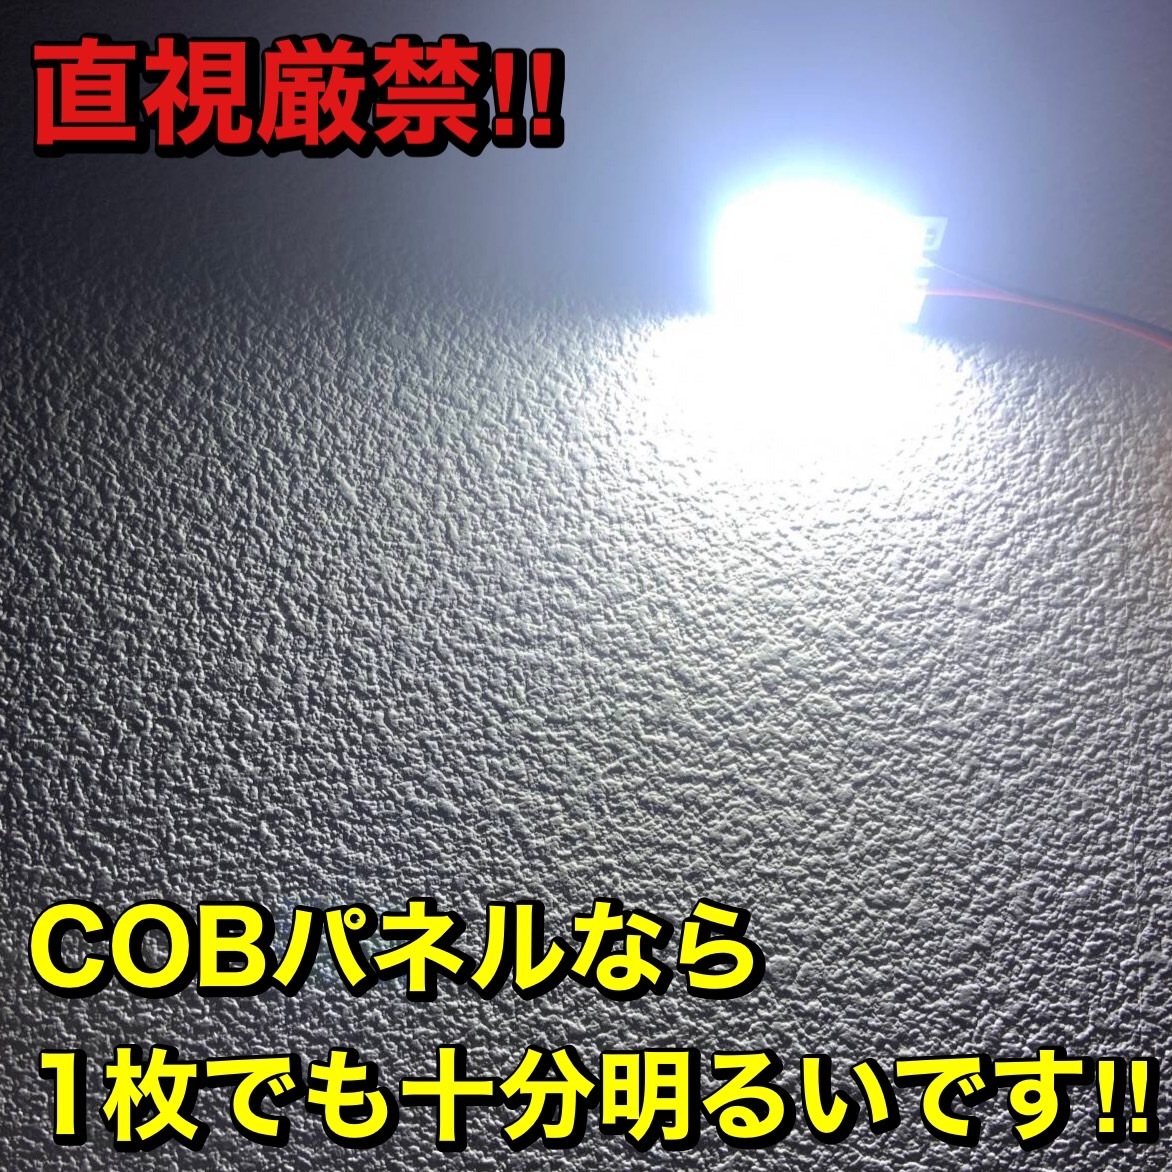 超爆光 日産 エルグランド E51 T10 LED COBパネル 全面発光 ルームランプ 室内灯 ホワイト 11個セット 送料無料